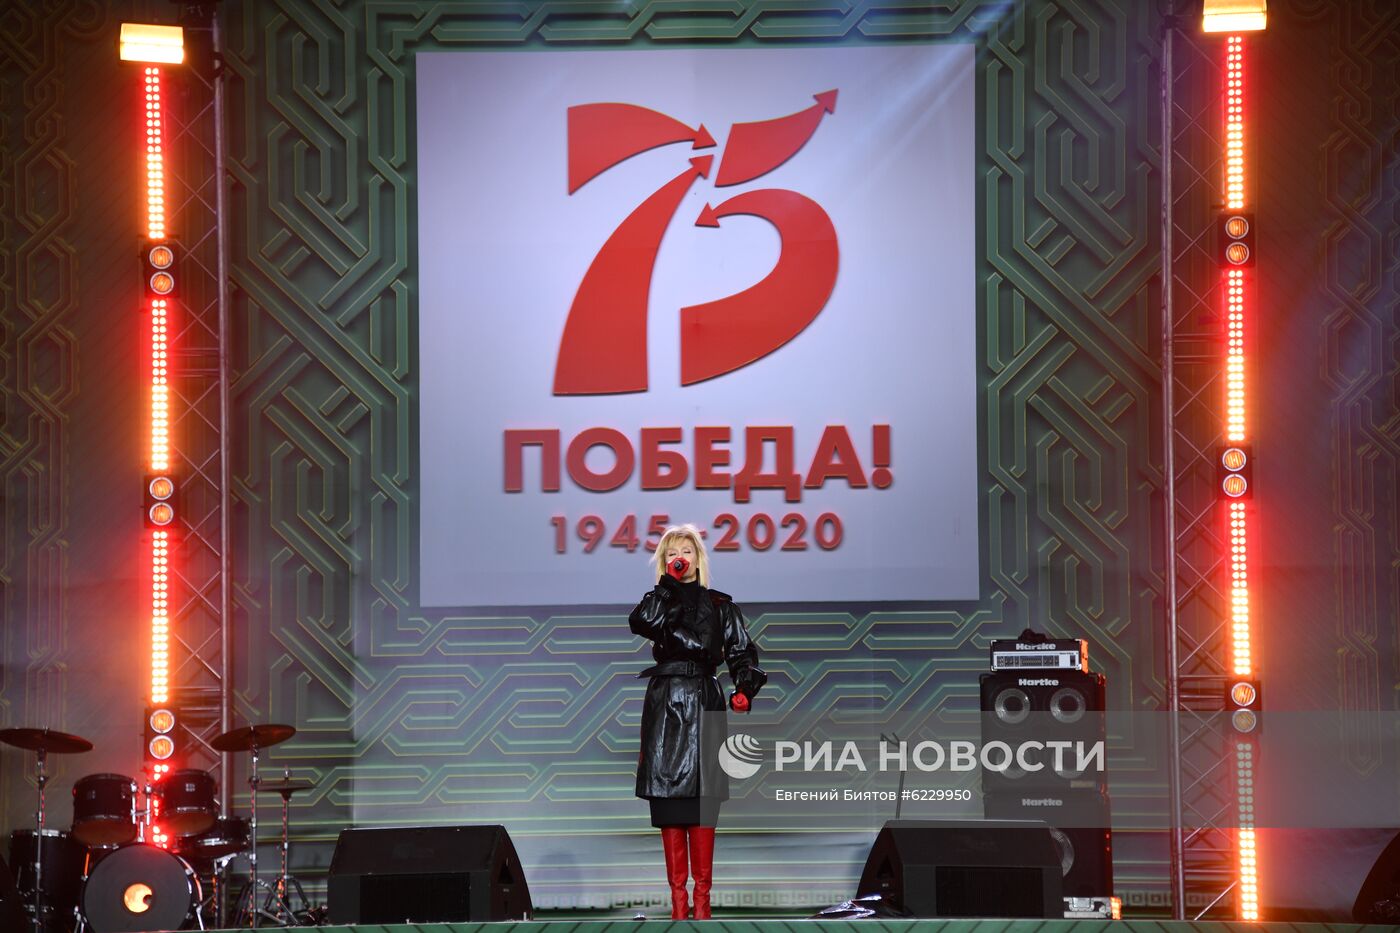 Благотворительный концерт в честь старта акции "Путь победы"